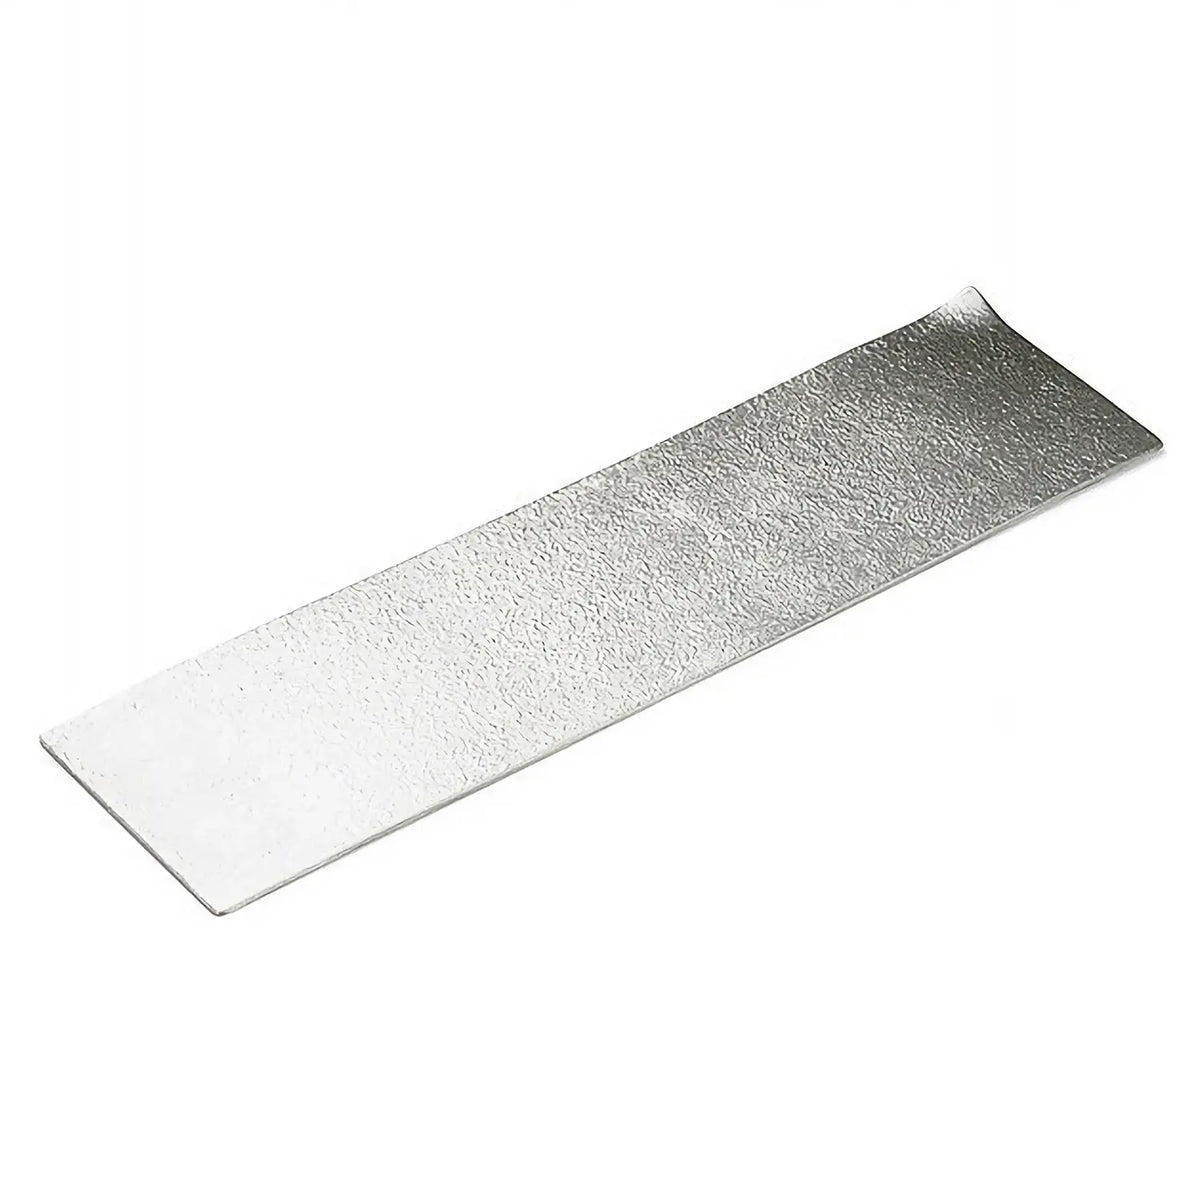 Nousaku Tinware Long Square Plate